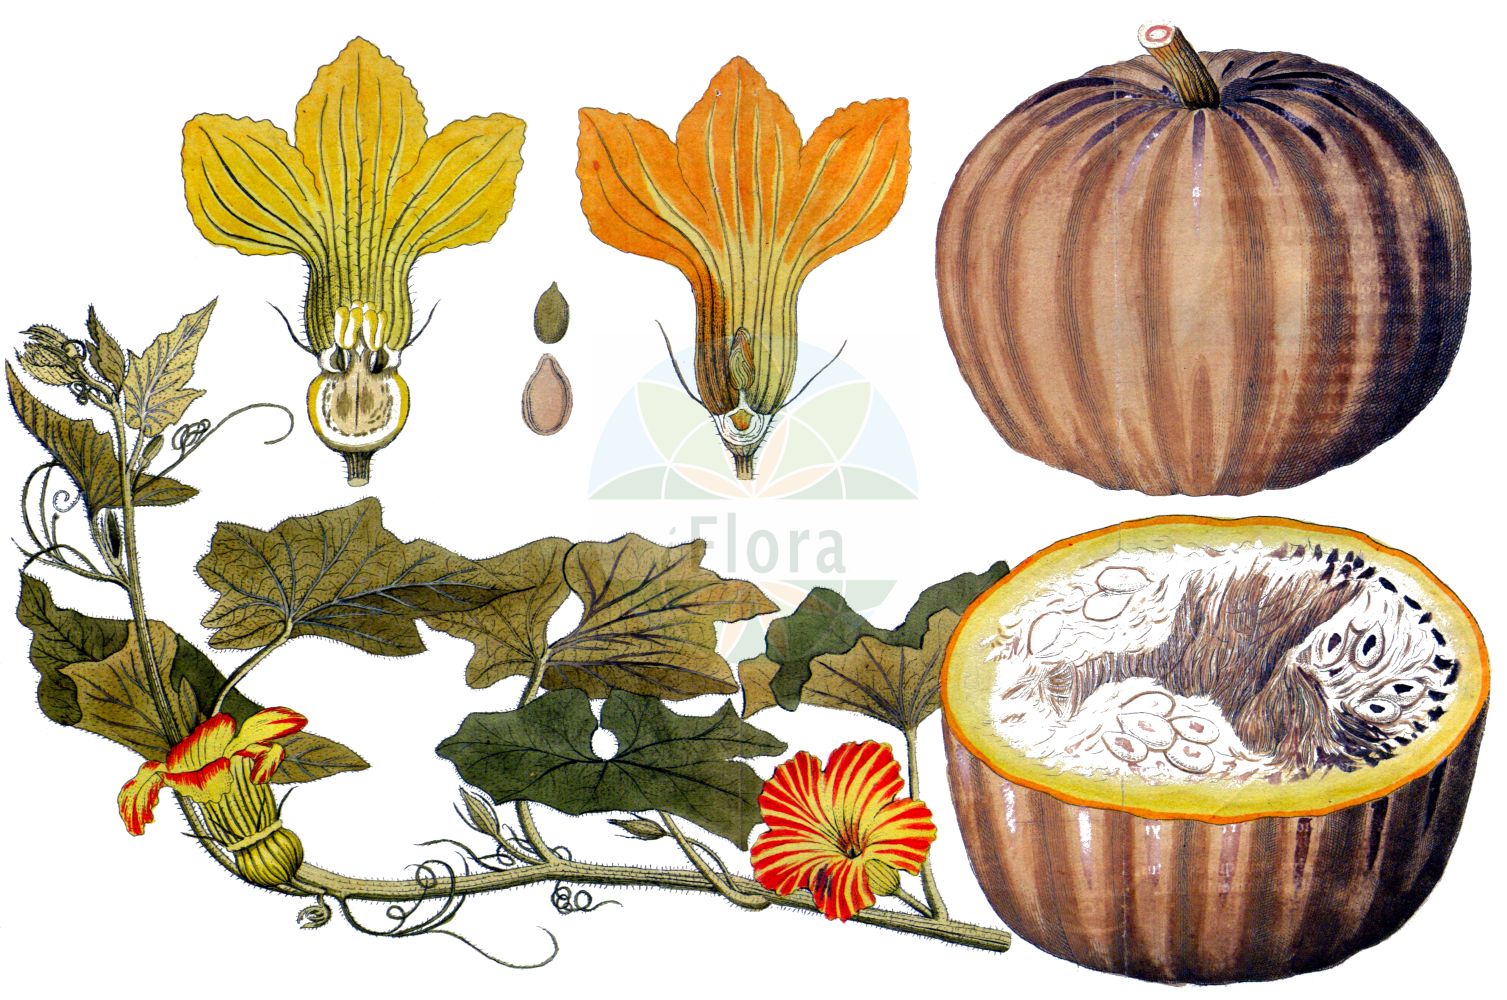 Historische Abbildung von Cucurbita pepo (Marrow). Das Bild zeigt Blatt, Bluete, Frucht und Same. ---- Historical Drawing of Cucurbita pepo (Marrow). The image is showing leaf, flower, fruit and seed.(Cucurbita pepo,Marrow,Cucurbita aurantia,Cucurbita clodiensis,Cucurbita melopepo,Cucurbita oblonga,Cucurbita ovifera,Cucurbita pepo,Cucurbita verrucosa,Cucurbita,Cucurbitaceae,Kürbisgewächse,Cucurbit family,Blatt,Bluete,Frucht,Same,leaf,flower,fruit,seed,Vietz (1800-1822))